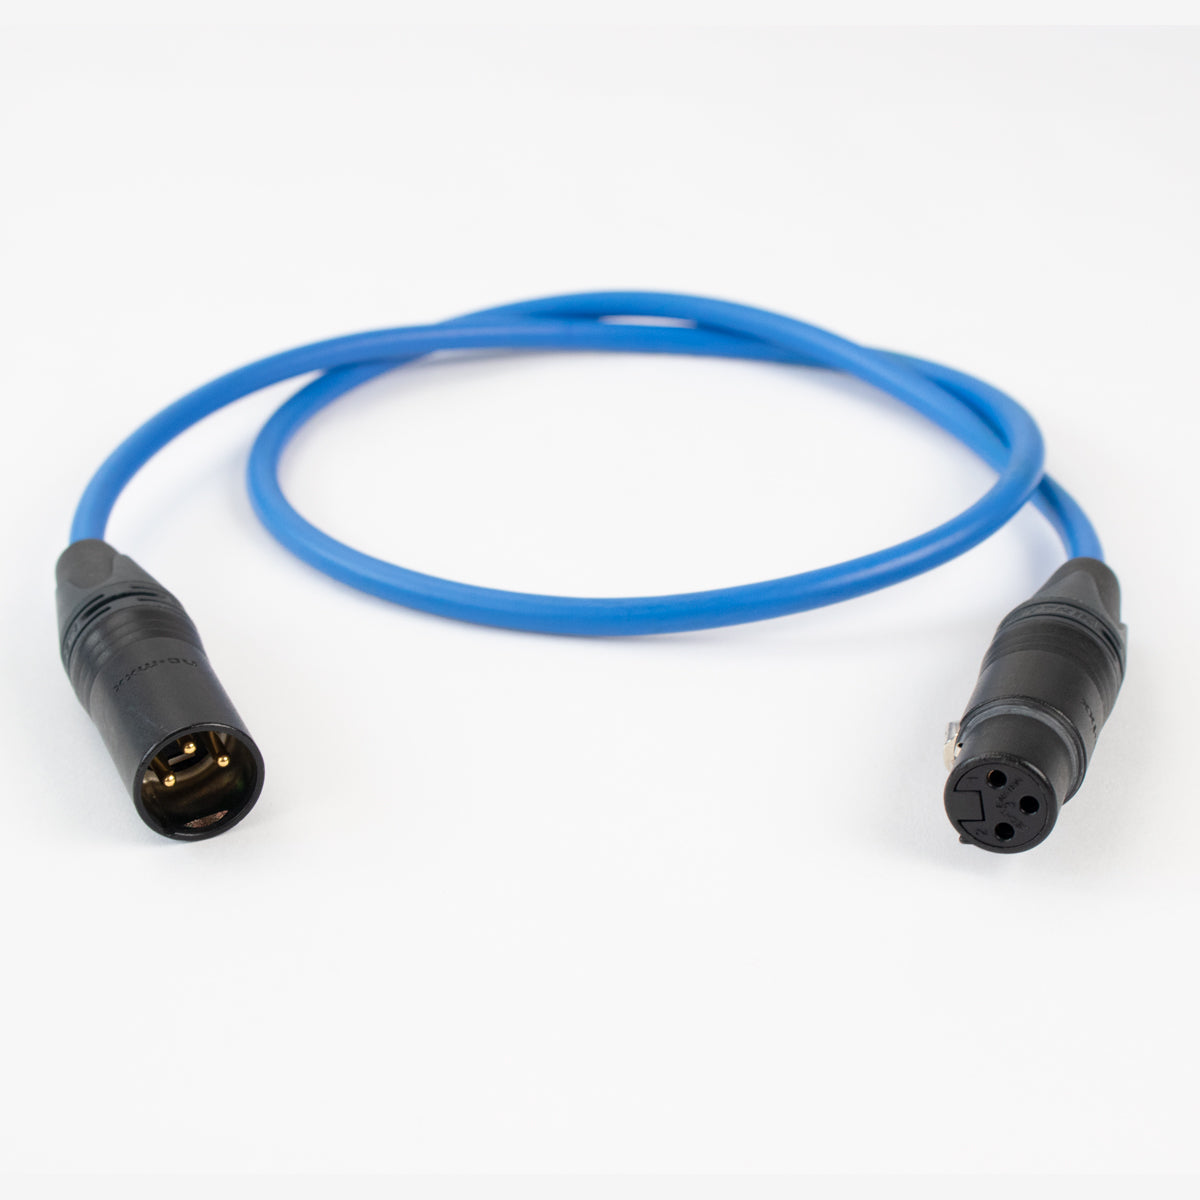 DMX-3X  3 Pin DMX Cables with Neutrik XLR Cord Ends